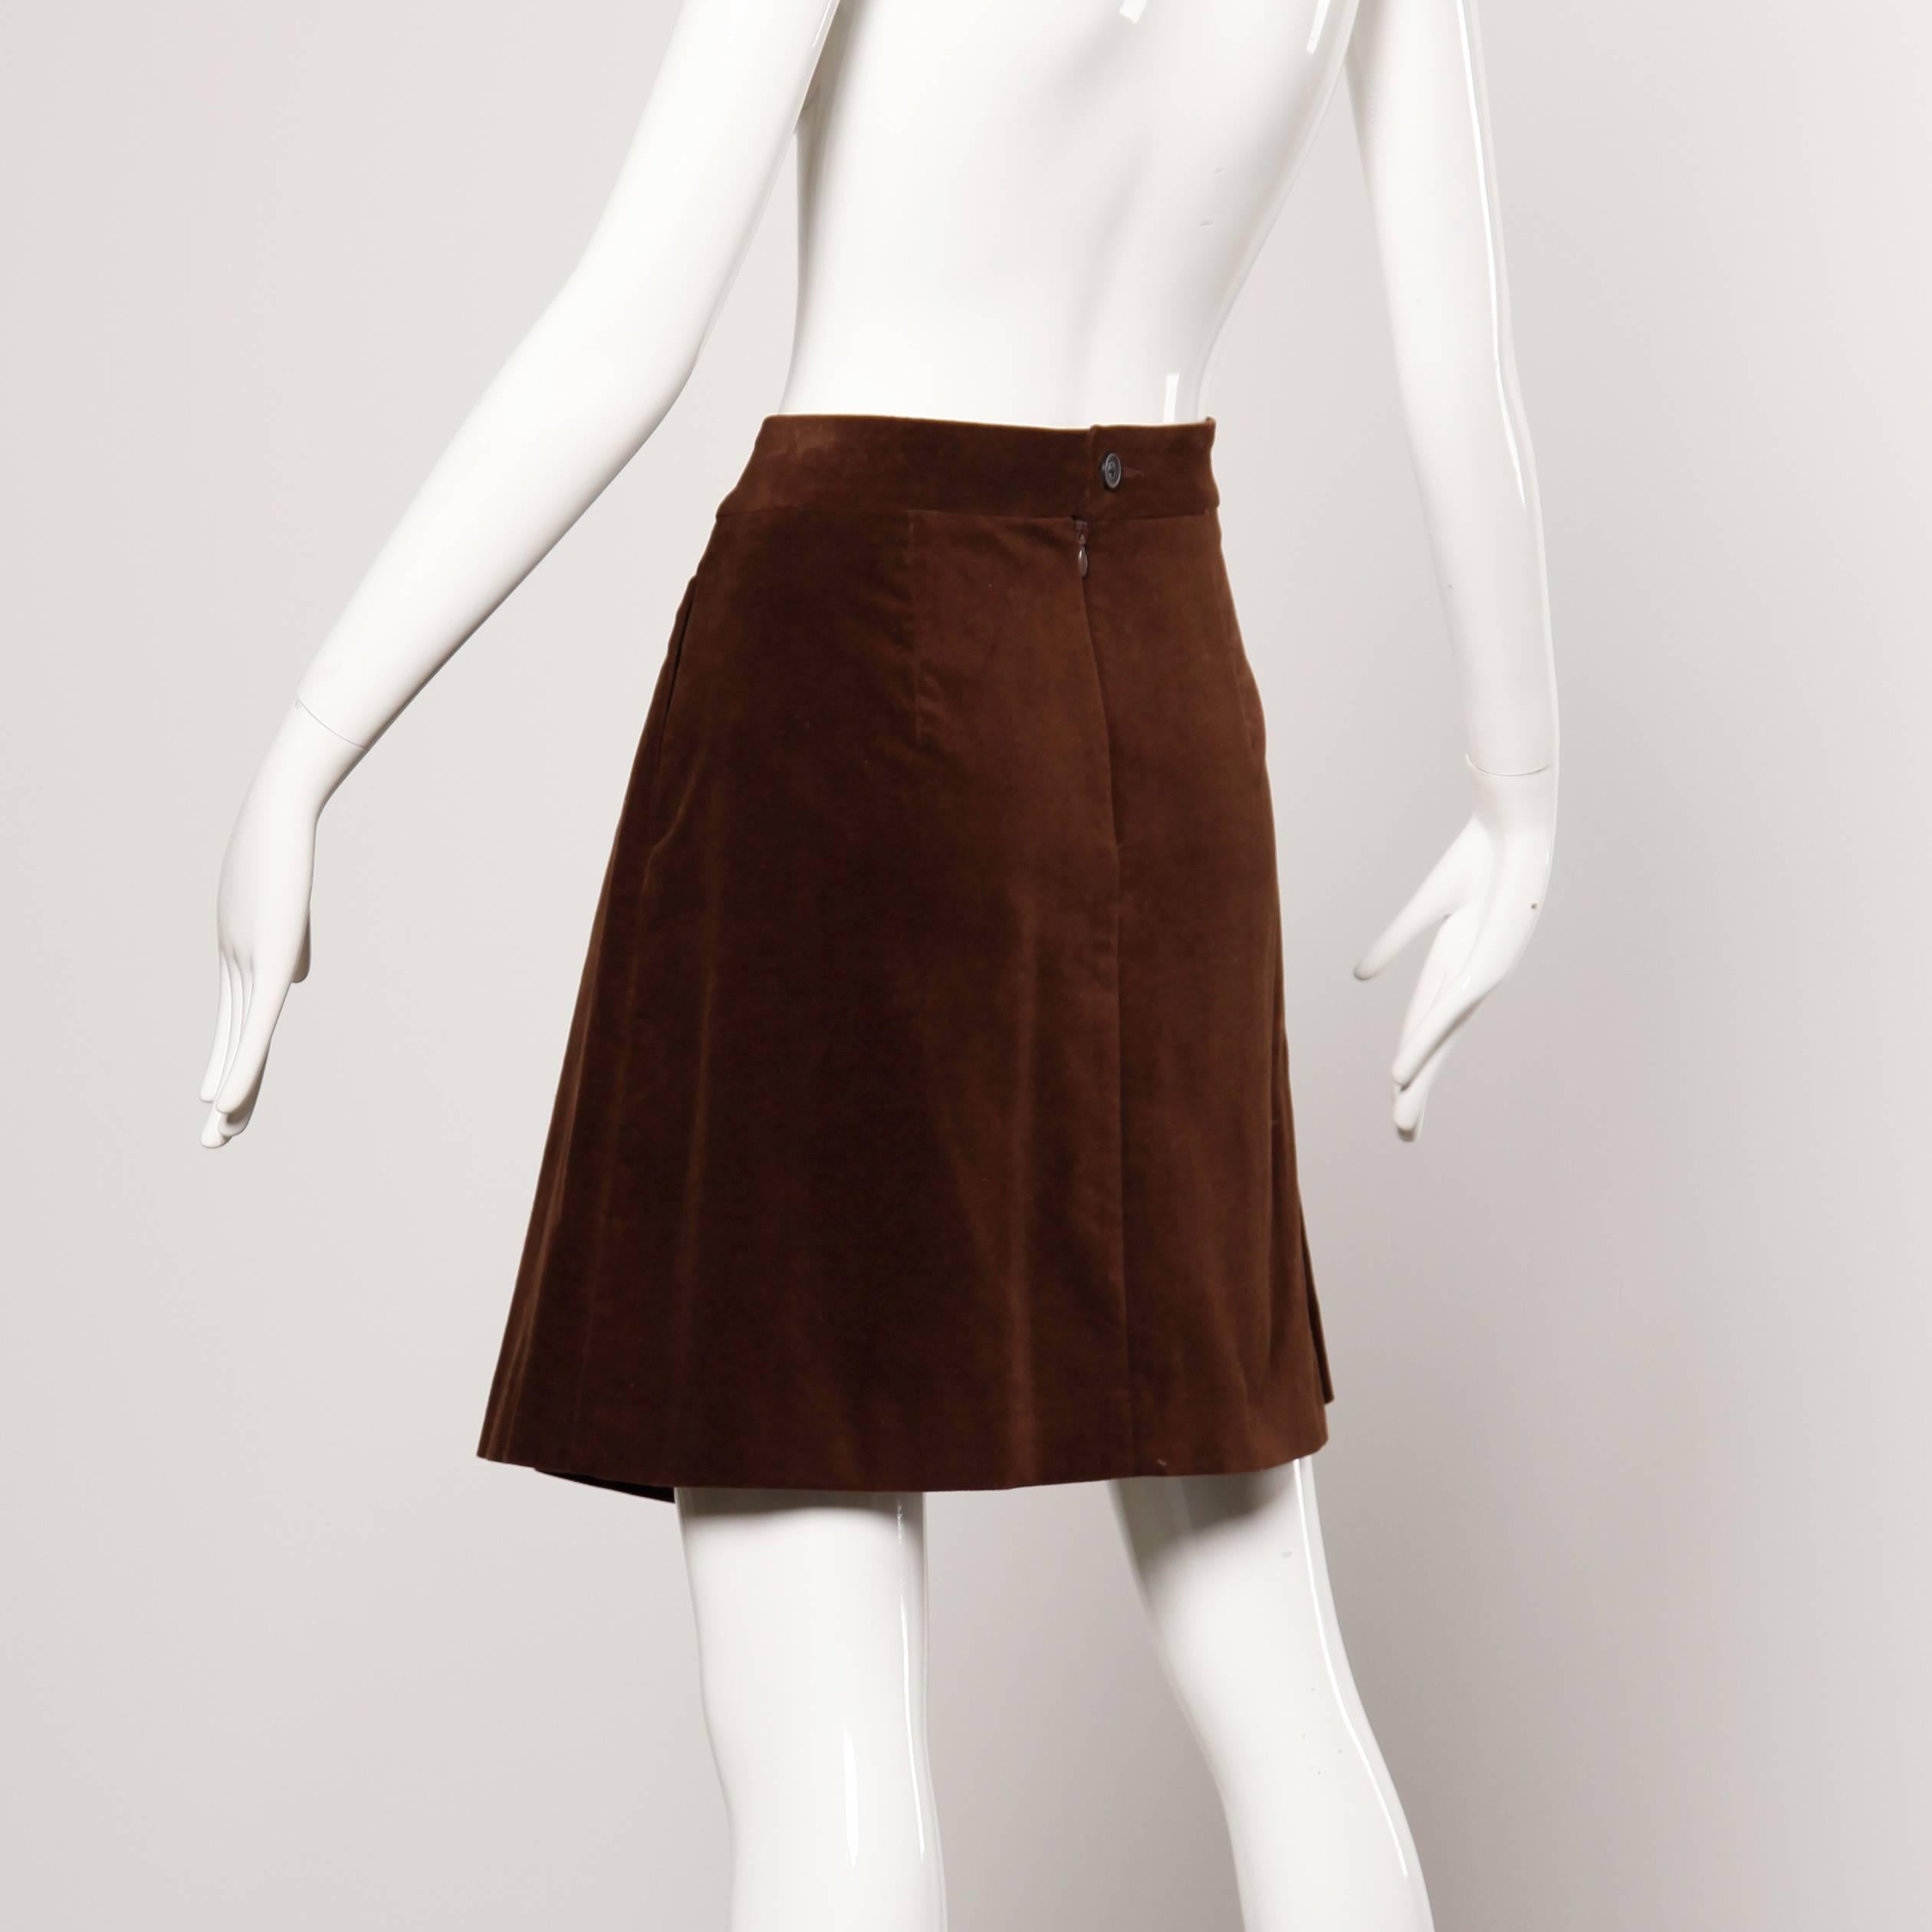 velvet brown skirt